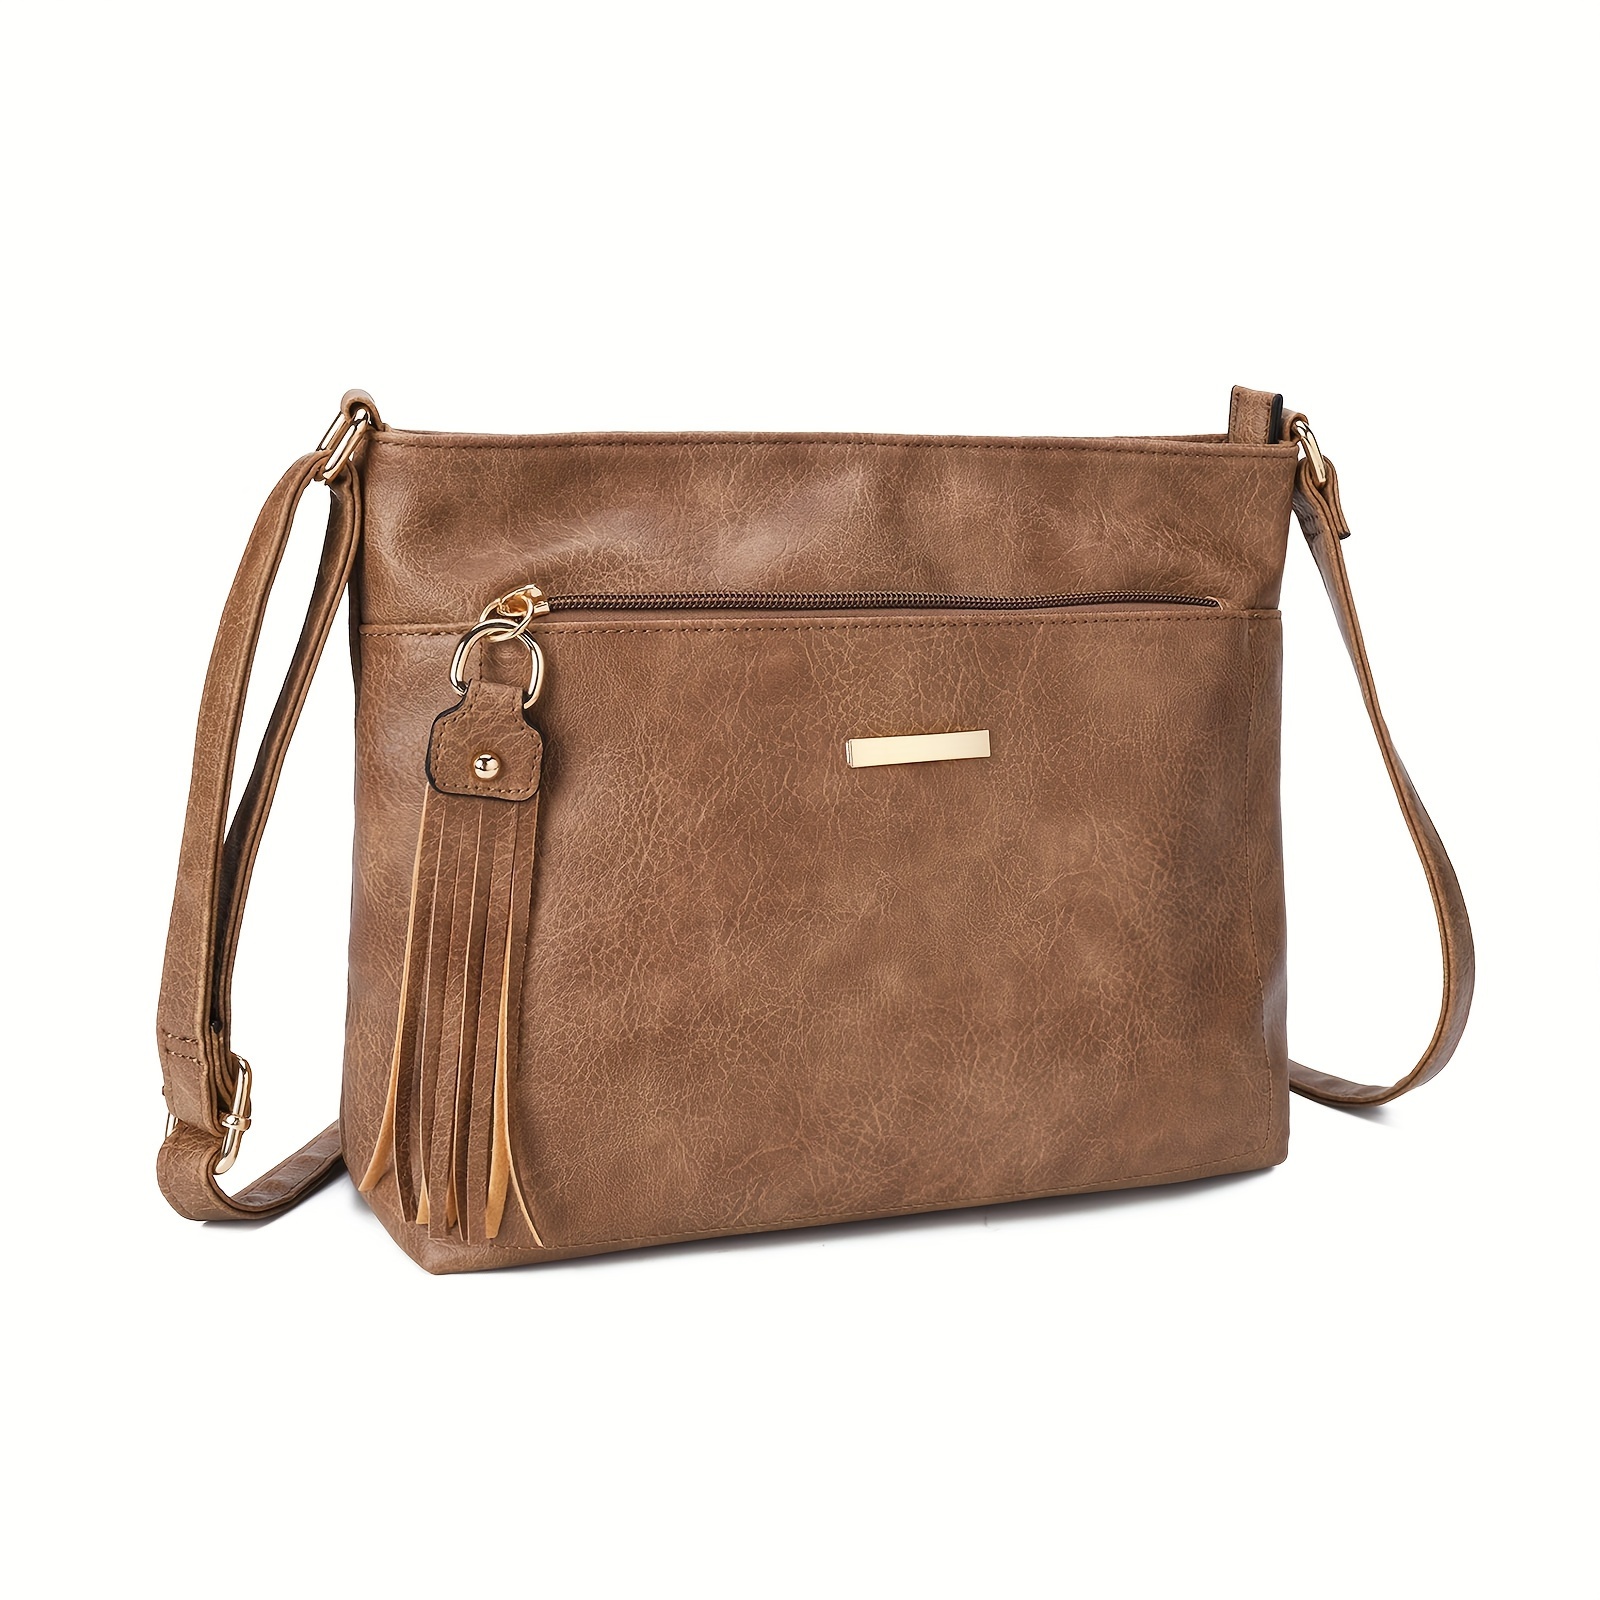 

Vintage Crossbody Bag, Versatile Pu Leather Shoulder Bag With Tassel Decor, Women's Every Day Messenger Bag